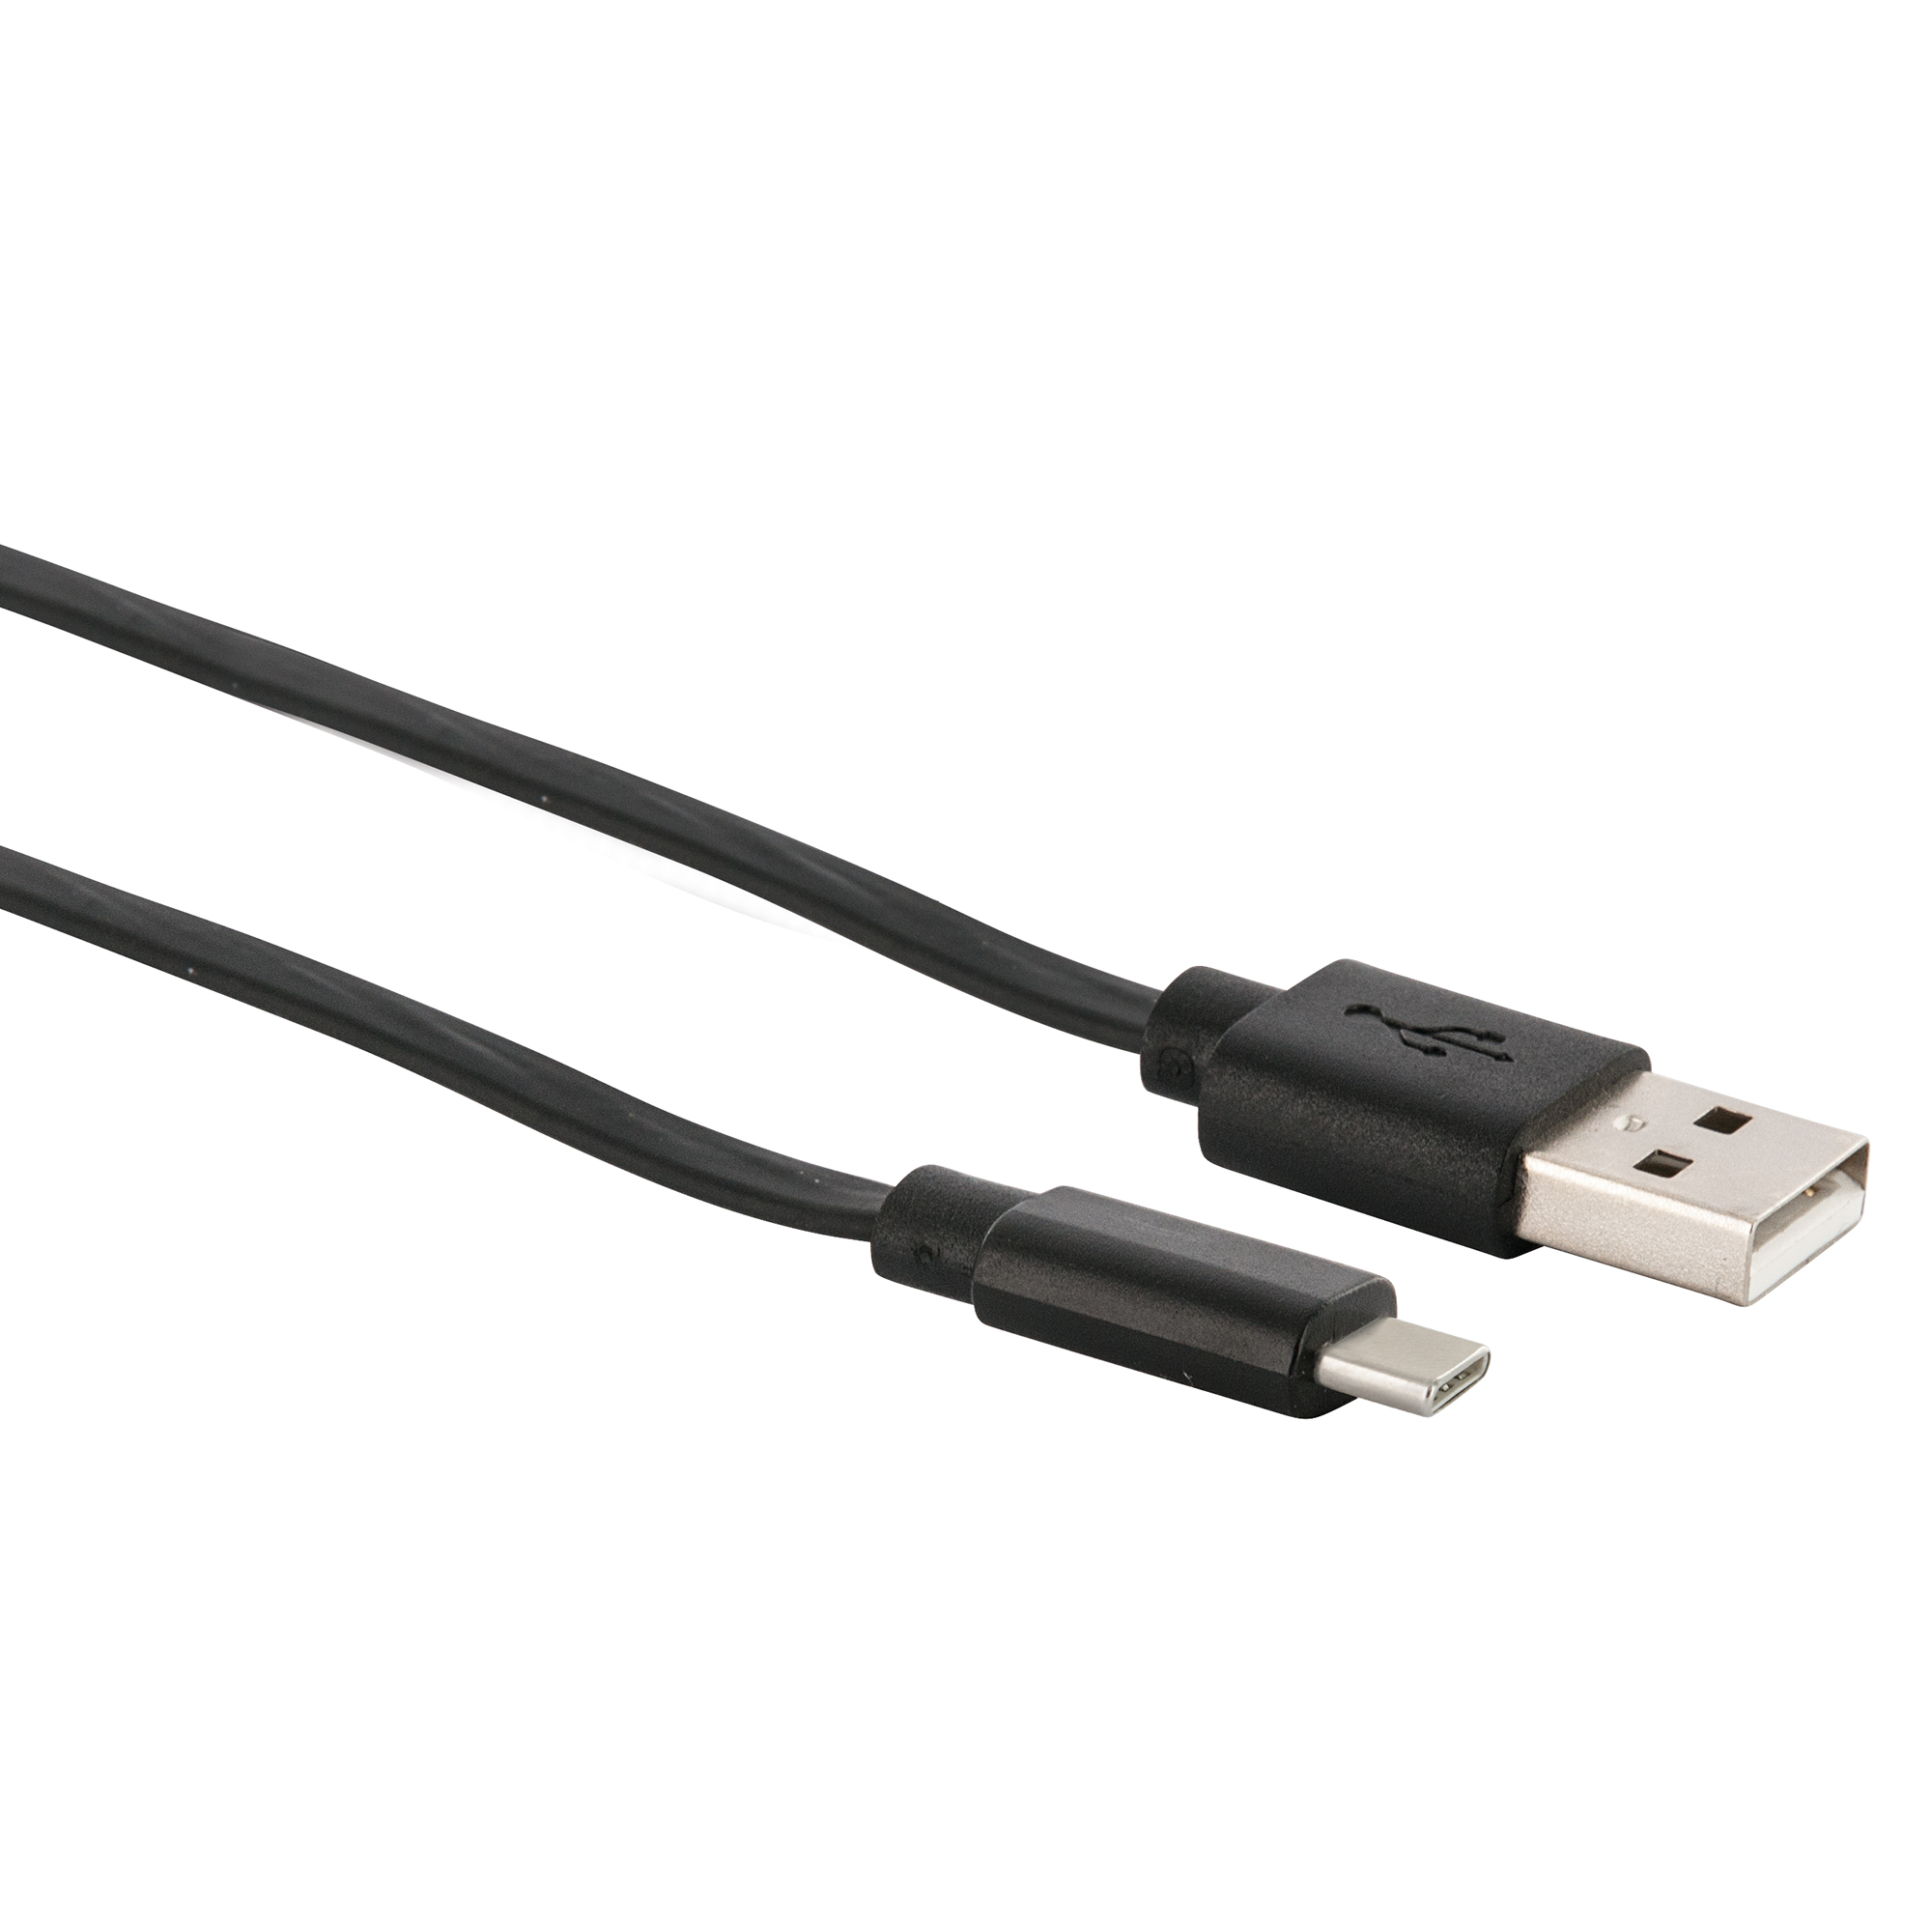 Sync- & Ladekabel USB A > USB C, ausziehbar + product picture